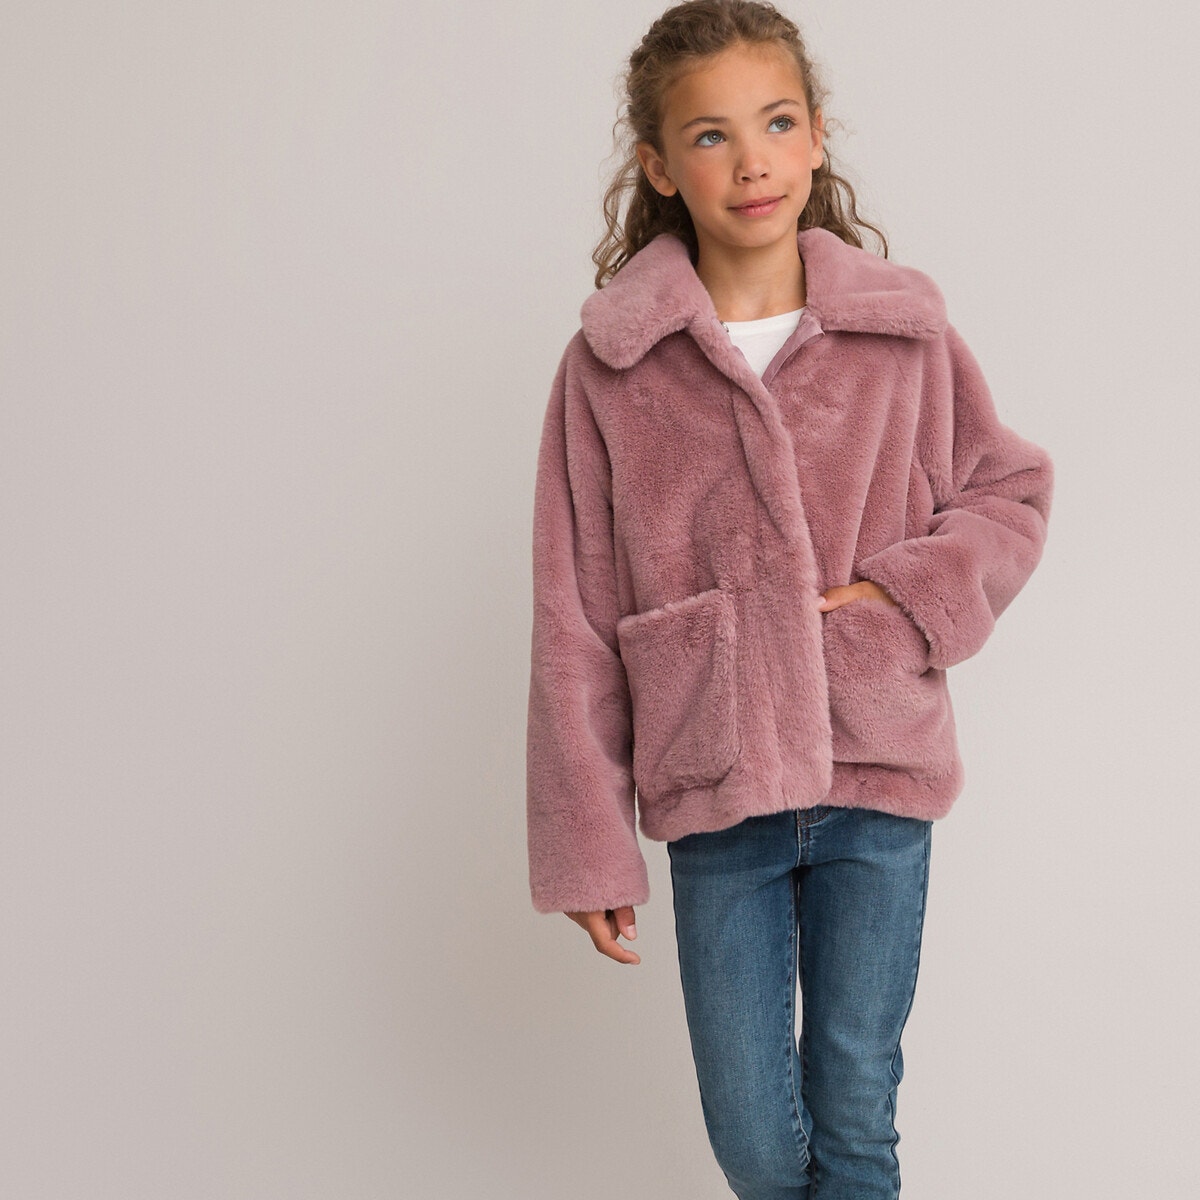 Μόδα > Παιδικά > Κορίτσι > Παλτό, μπουφάν > Παλτό Ζεστό παλτό από συνθετική γούνα